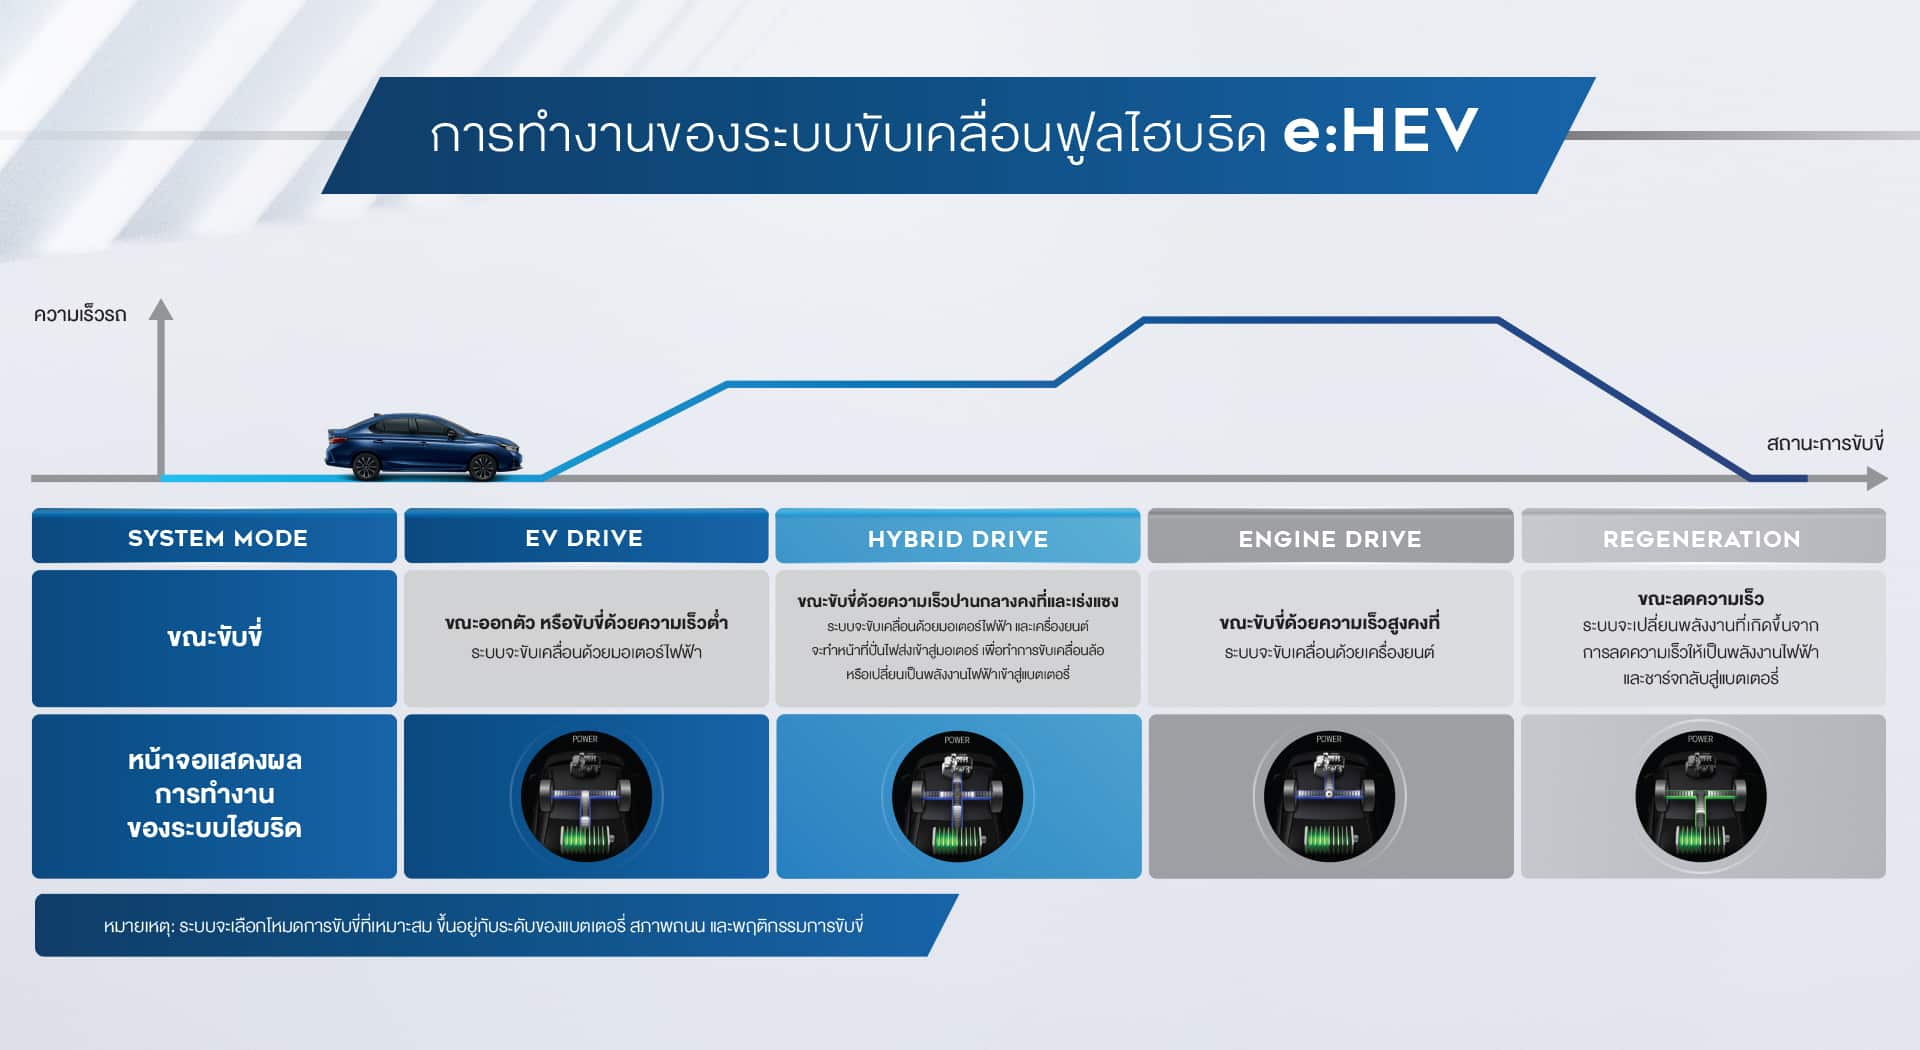 การทำงาน Full hybrid e:HEV